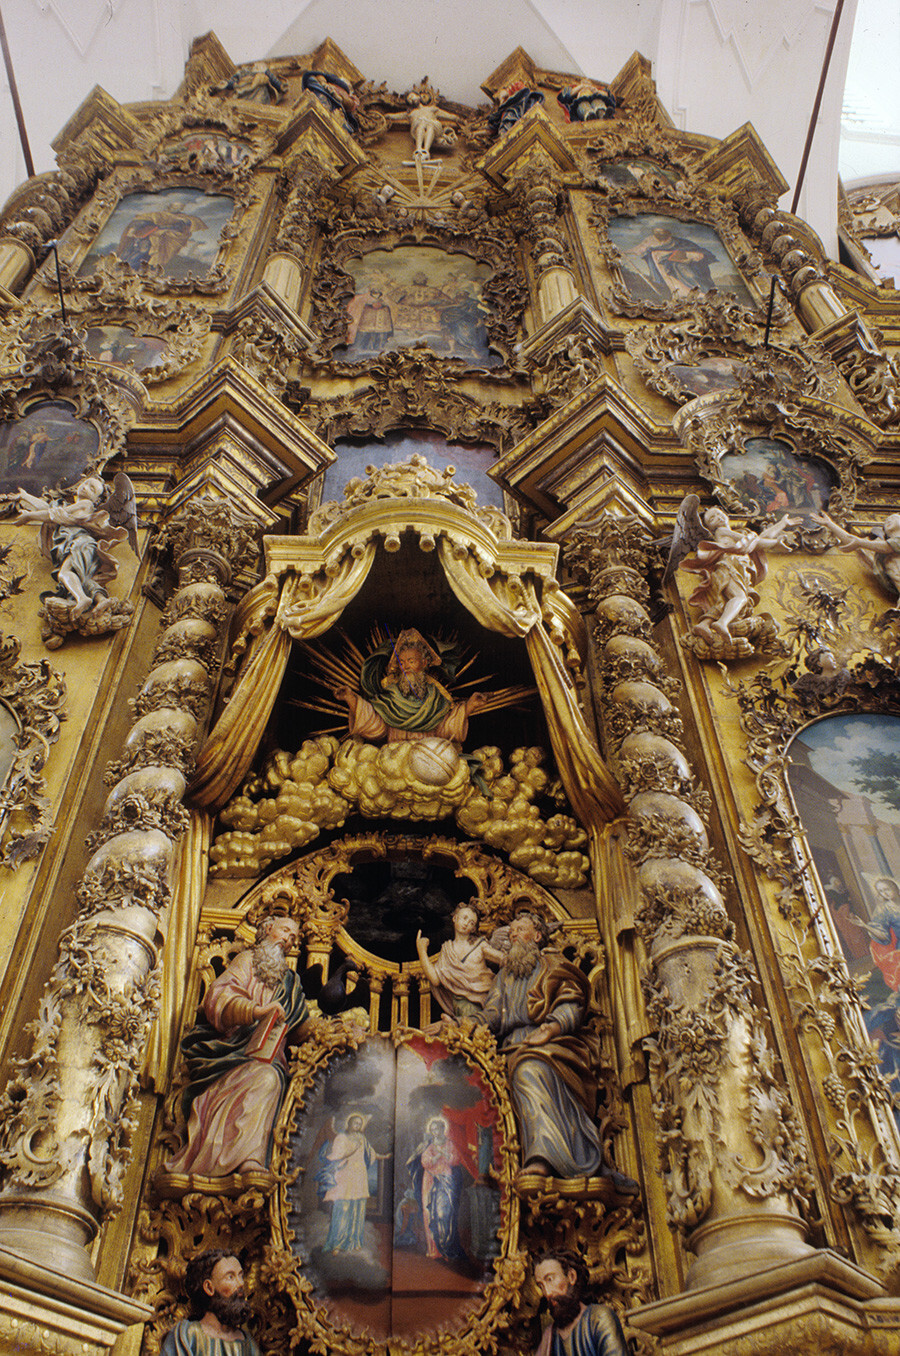 Il Monastero della Trinità-Gleden. Iconostasi della Cattedrale della Trinità. Al centro, la Porta Reale. In alto, la statua in legno di Cristo sulla croce. 27 luglio 1996